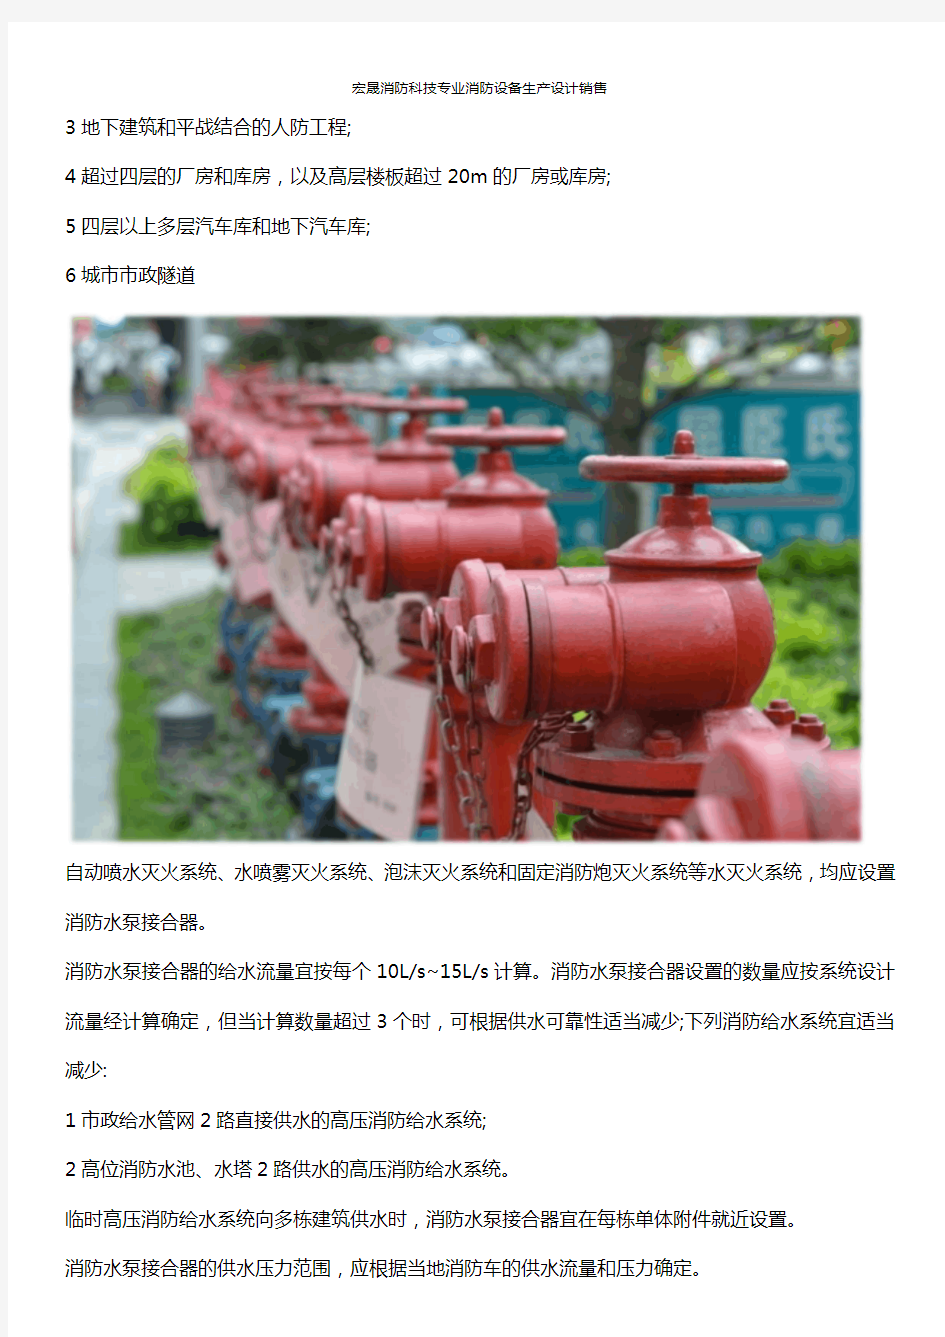 关于消防水泵接合器安装标准